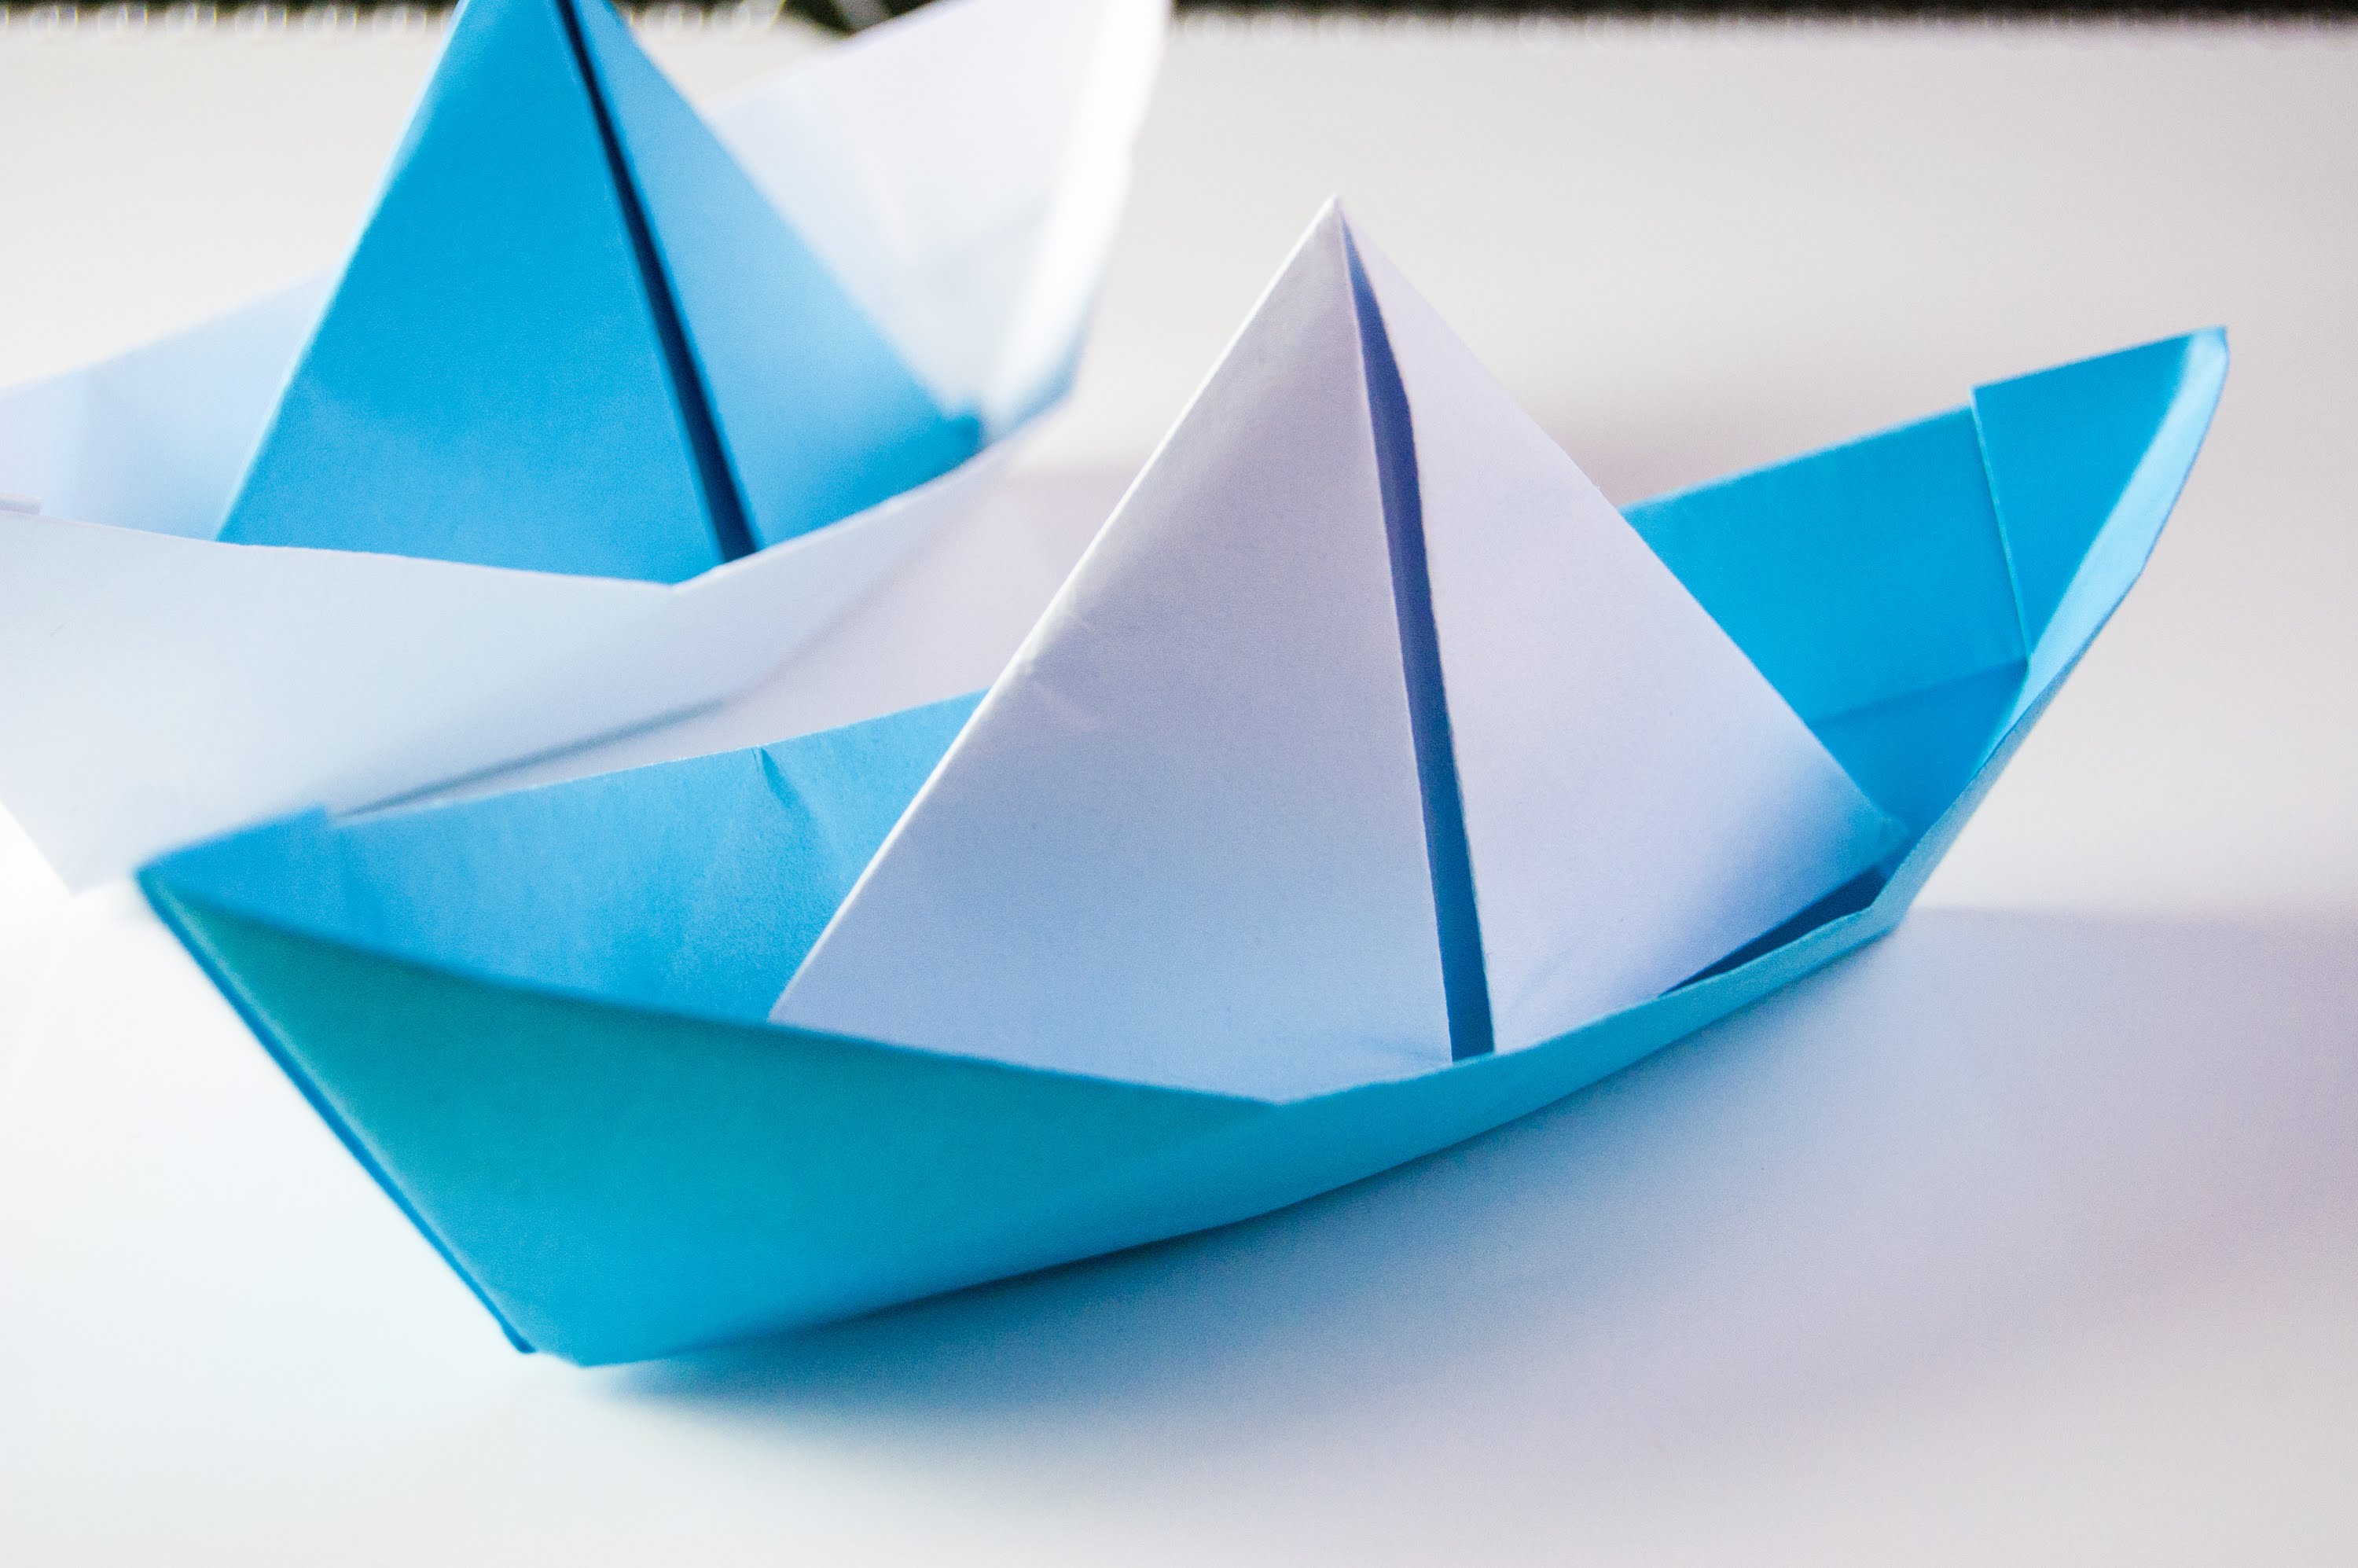 Кораблик из бумаги я по ручью пустил. Оригами кораблик пароход. Бумажный кораблик оригами. Поделка кораблик из бумаги. Парусник из бумаги.